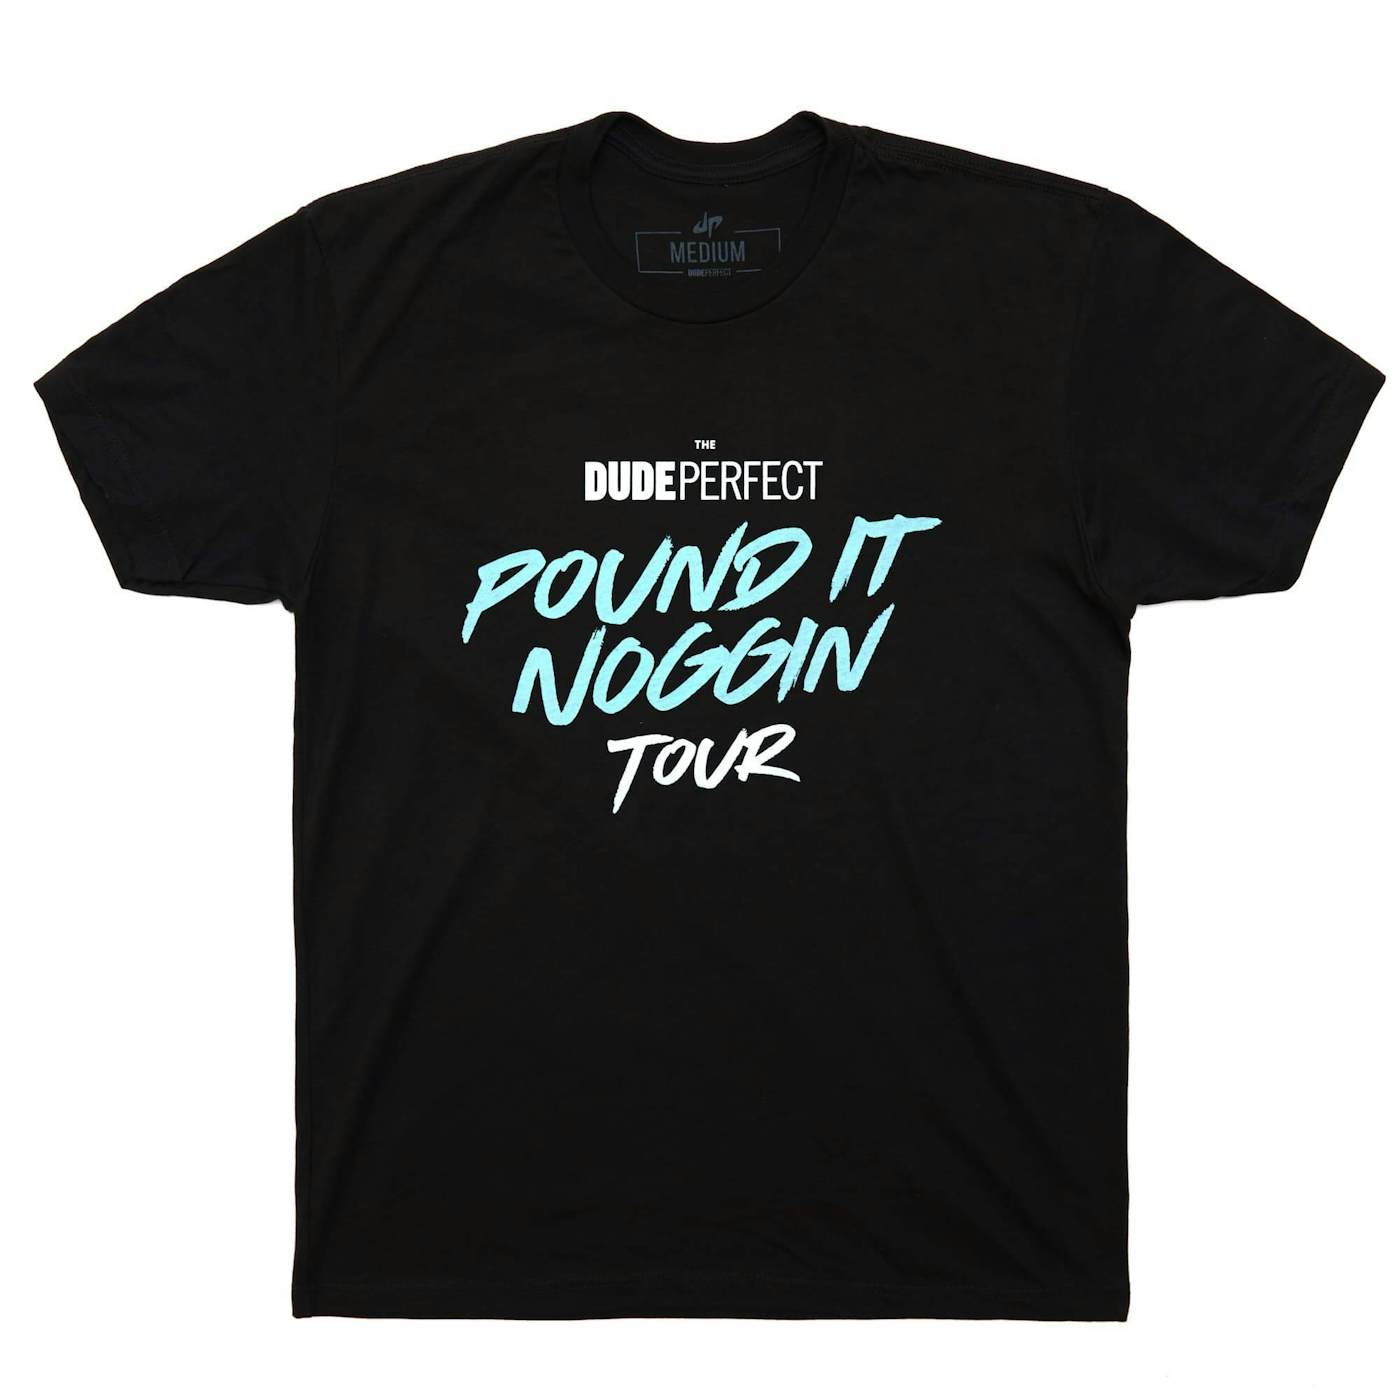 Dude Perfect Official Pound It Noggin Tour 2019 Tee w/ Tour Dates